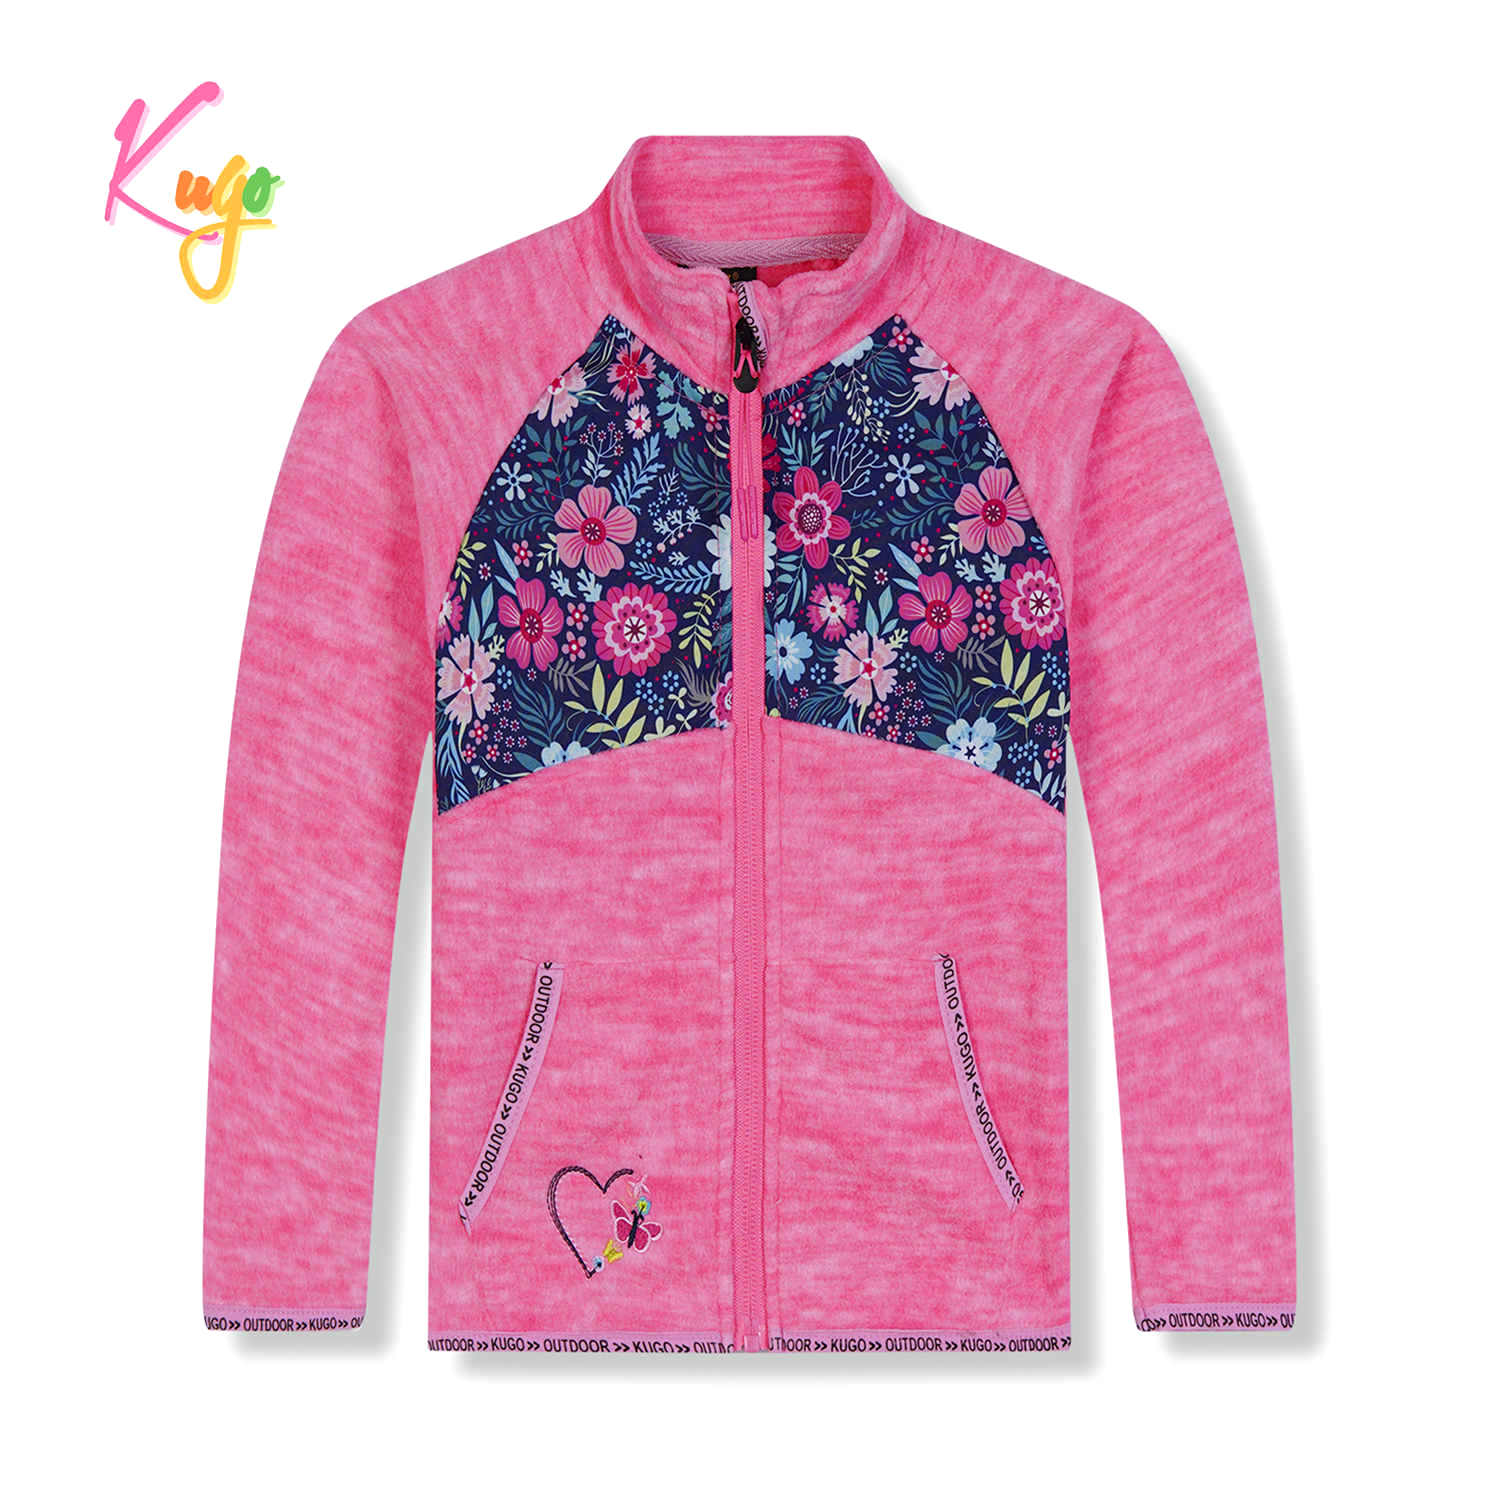 Dívčí flísová mikina - KUGO FM9705, růžová Barva: Růžová, Velikost: 80